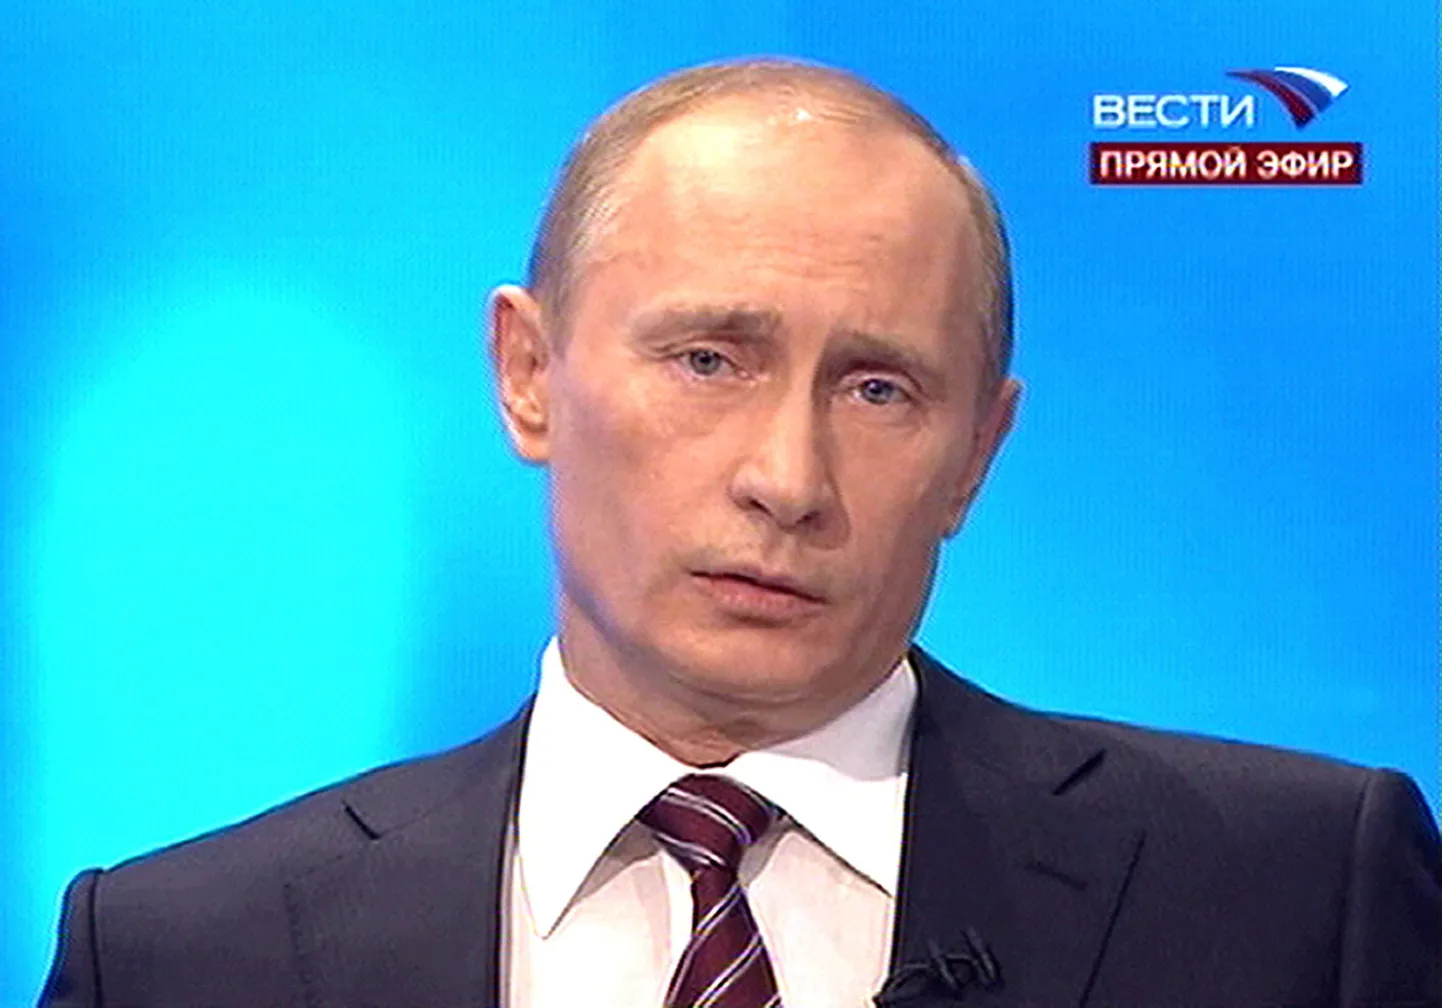 Vene peaminister Vladimir Putin vastamas rahva küsimustele telekanalil Vesti.